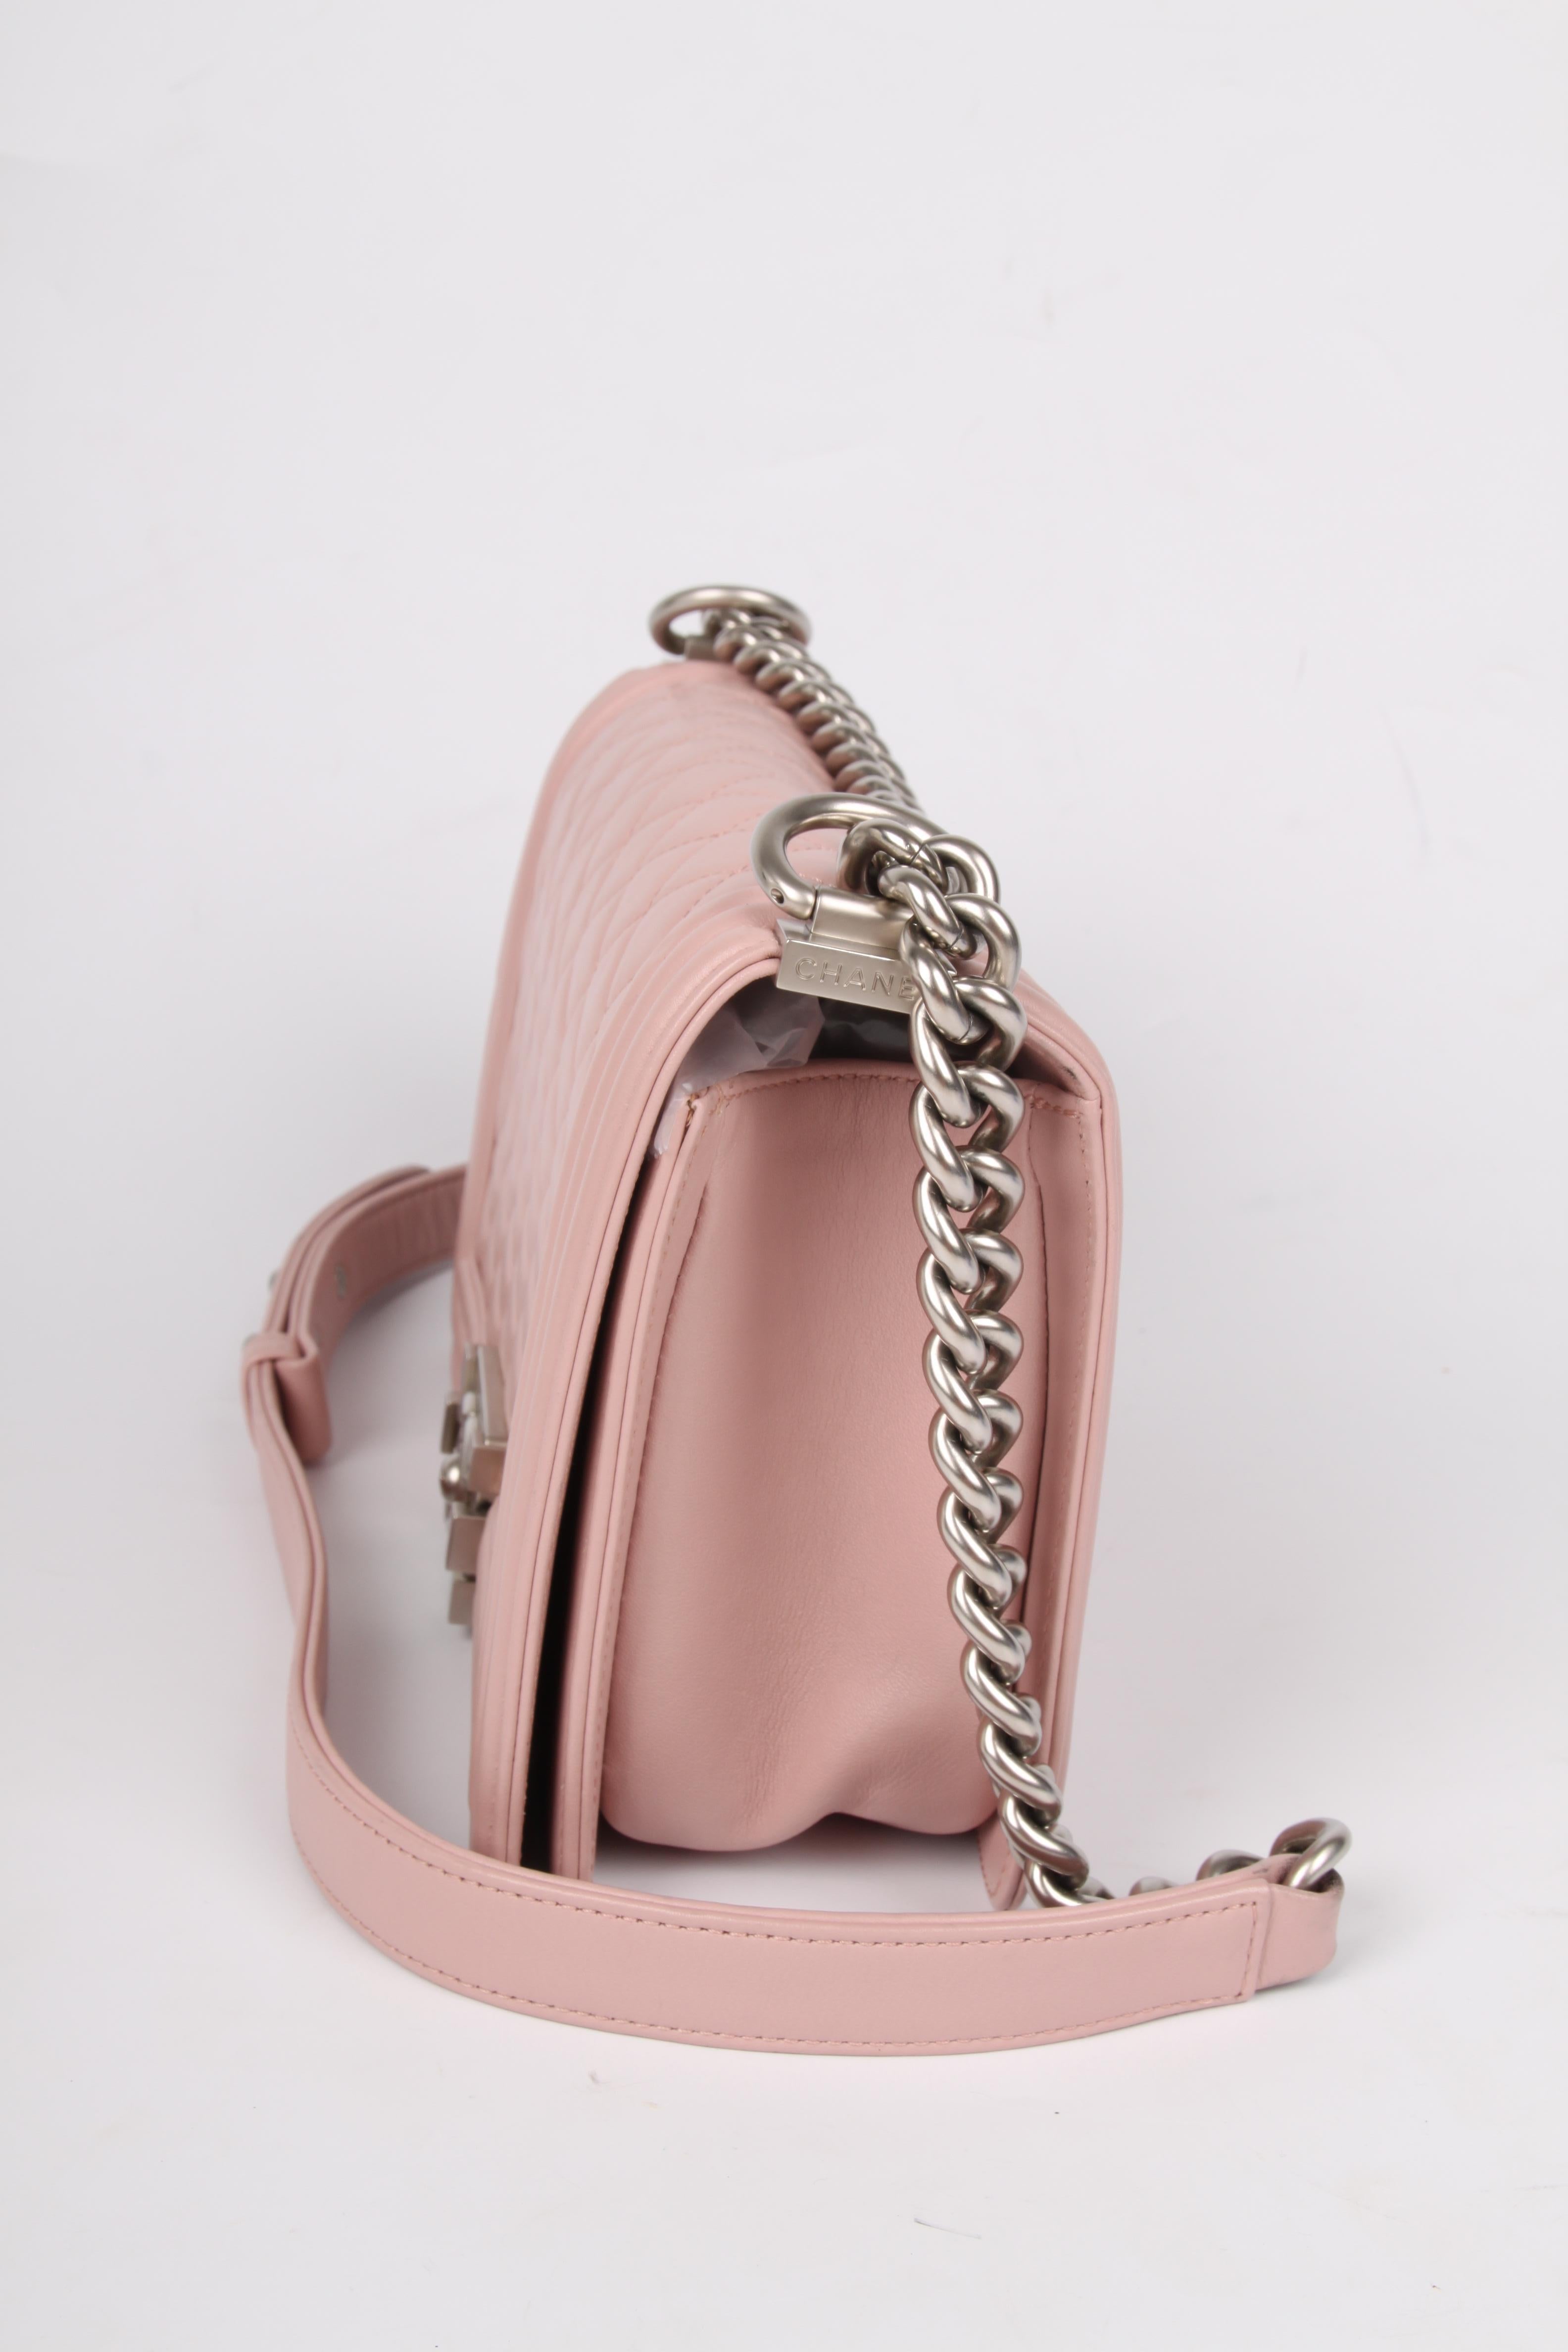 Chanel Le Boy Bag Medium - dusty pale pink 2